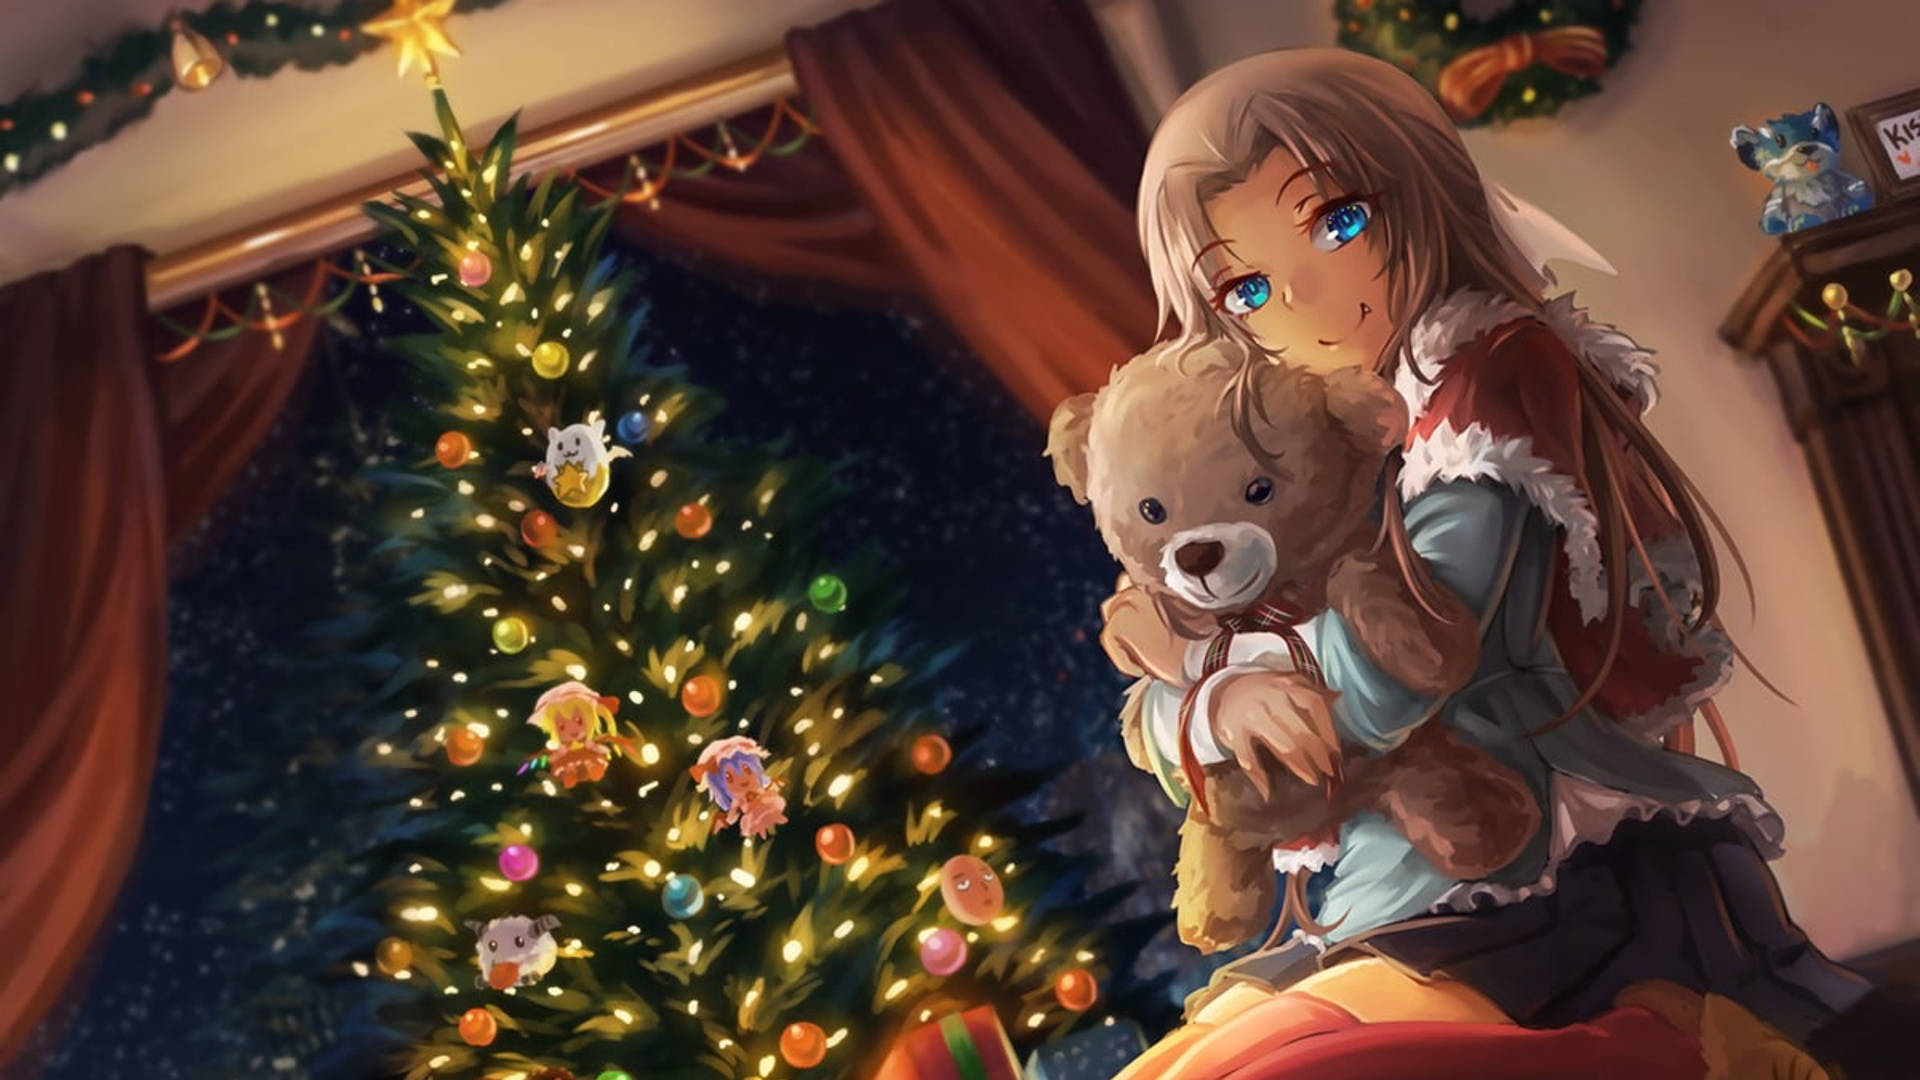 Anime Christmas Girl With Teddy Bear Background